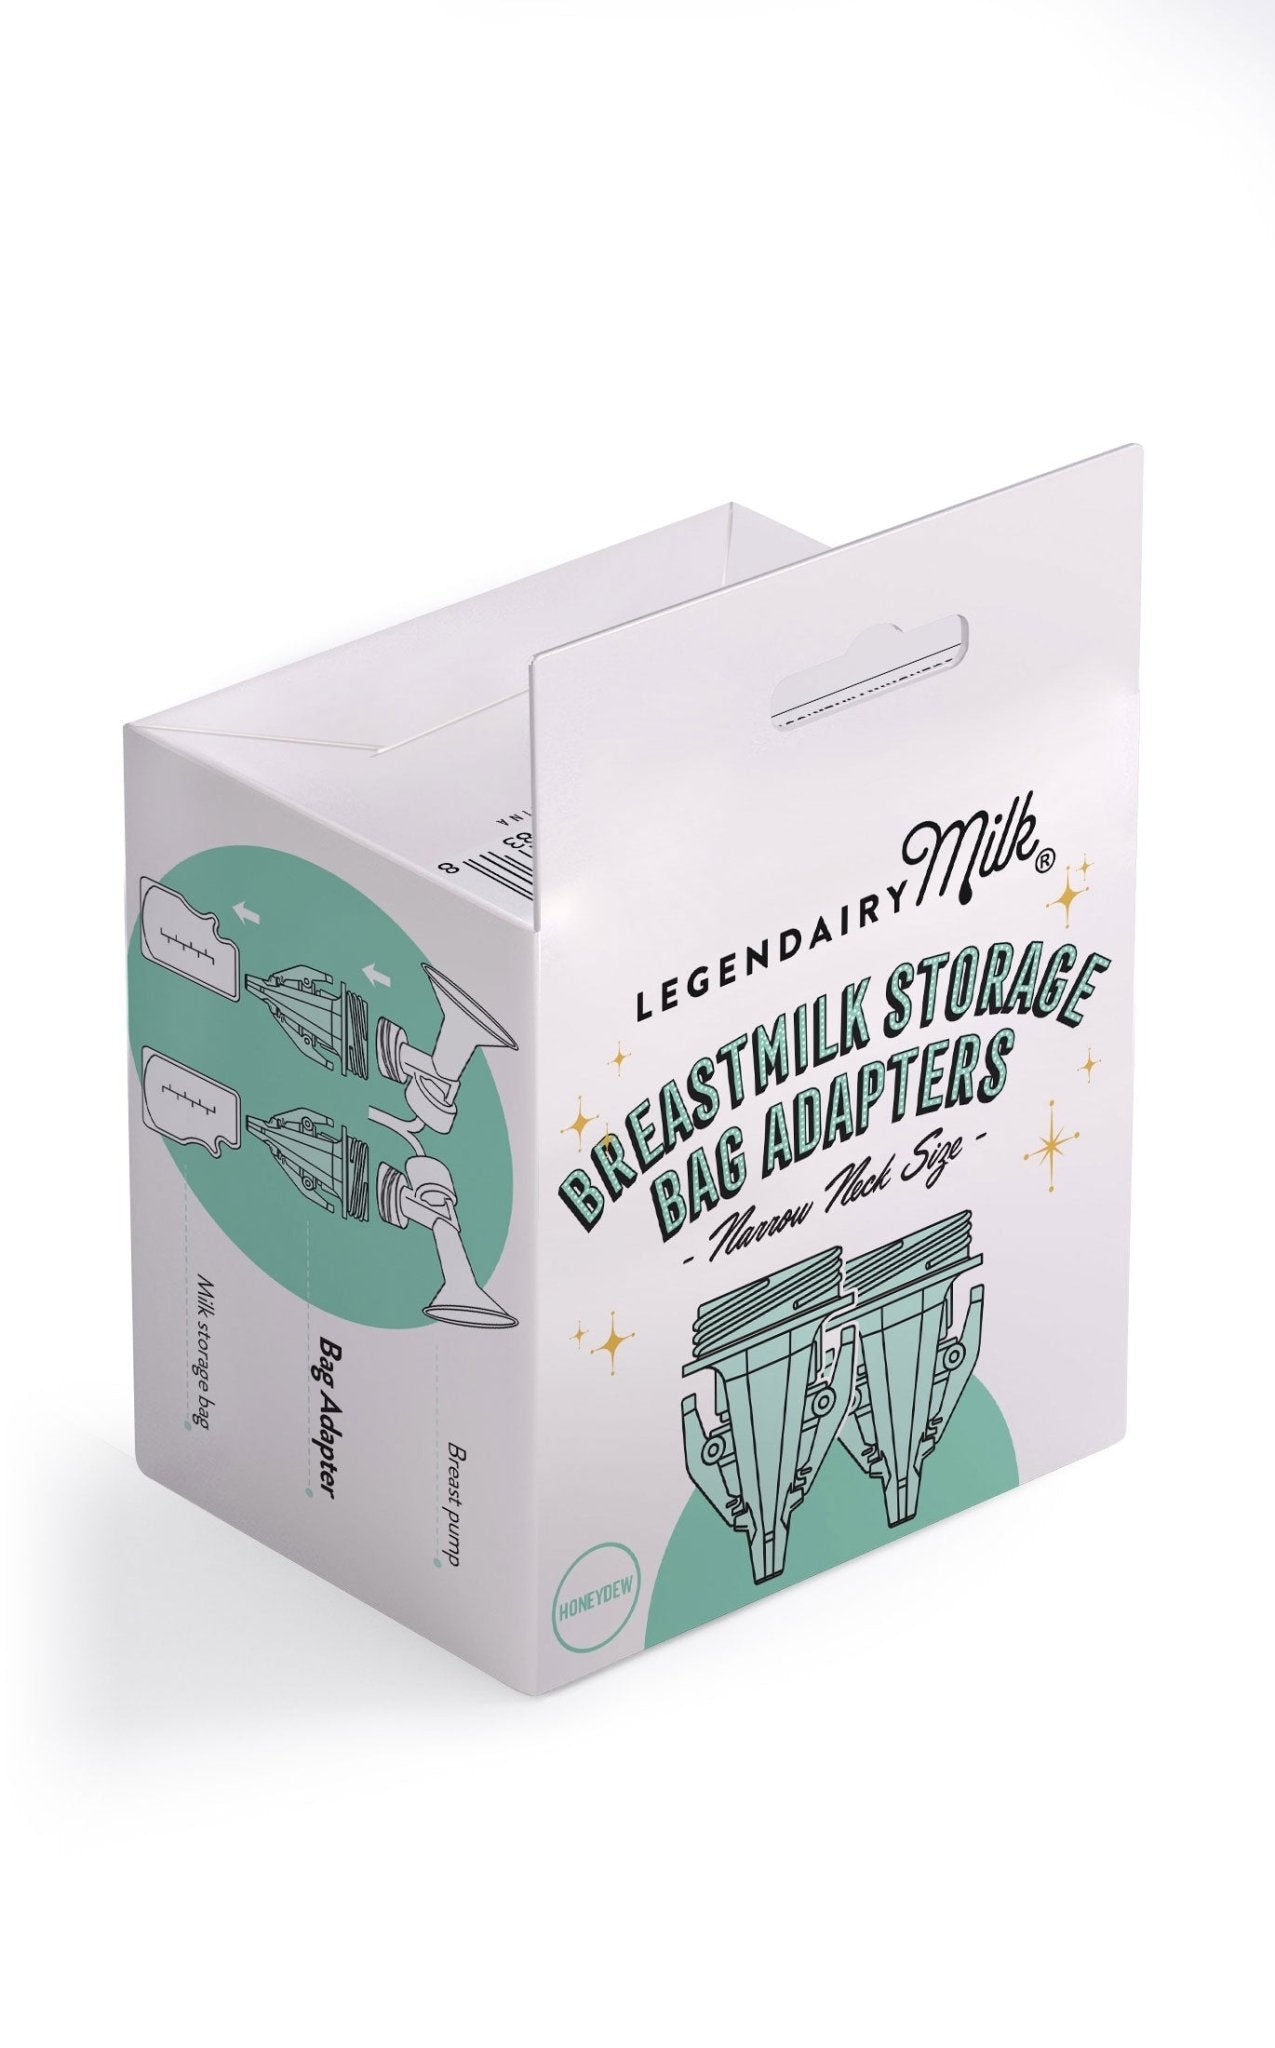 Breastmilk Storage Bag Adapters - Narrow Mouth - Legendairy Milk